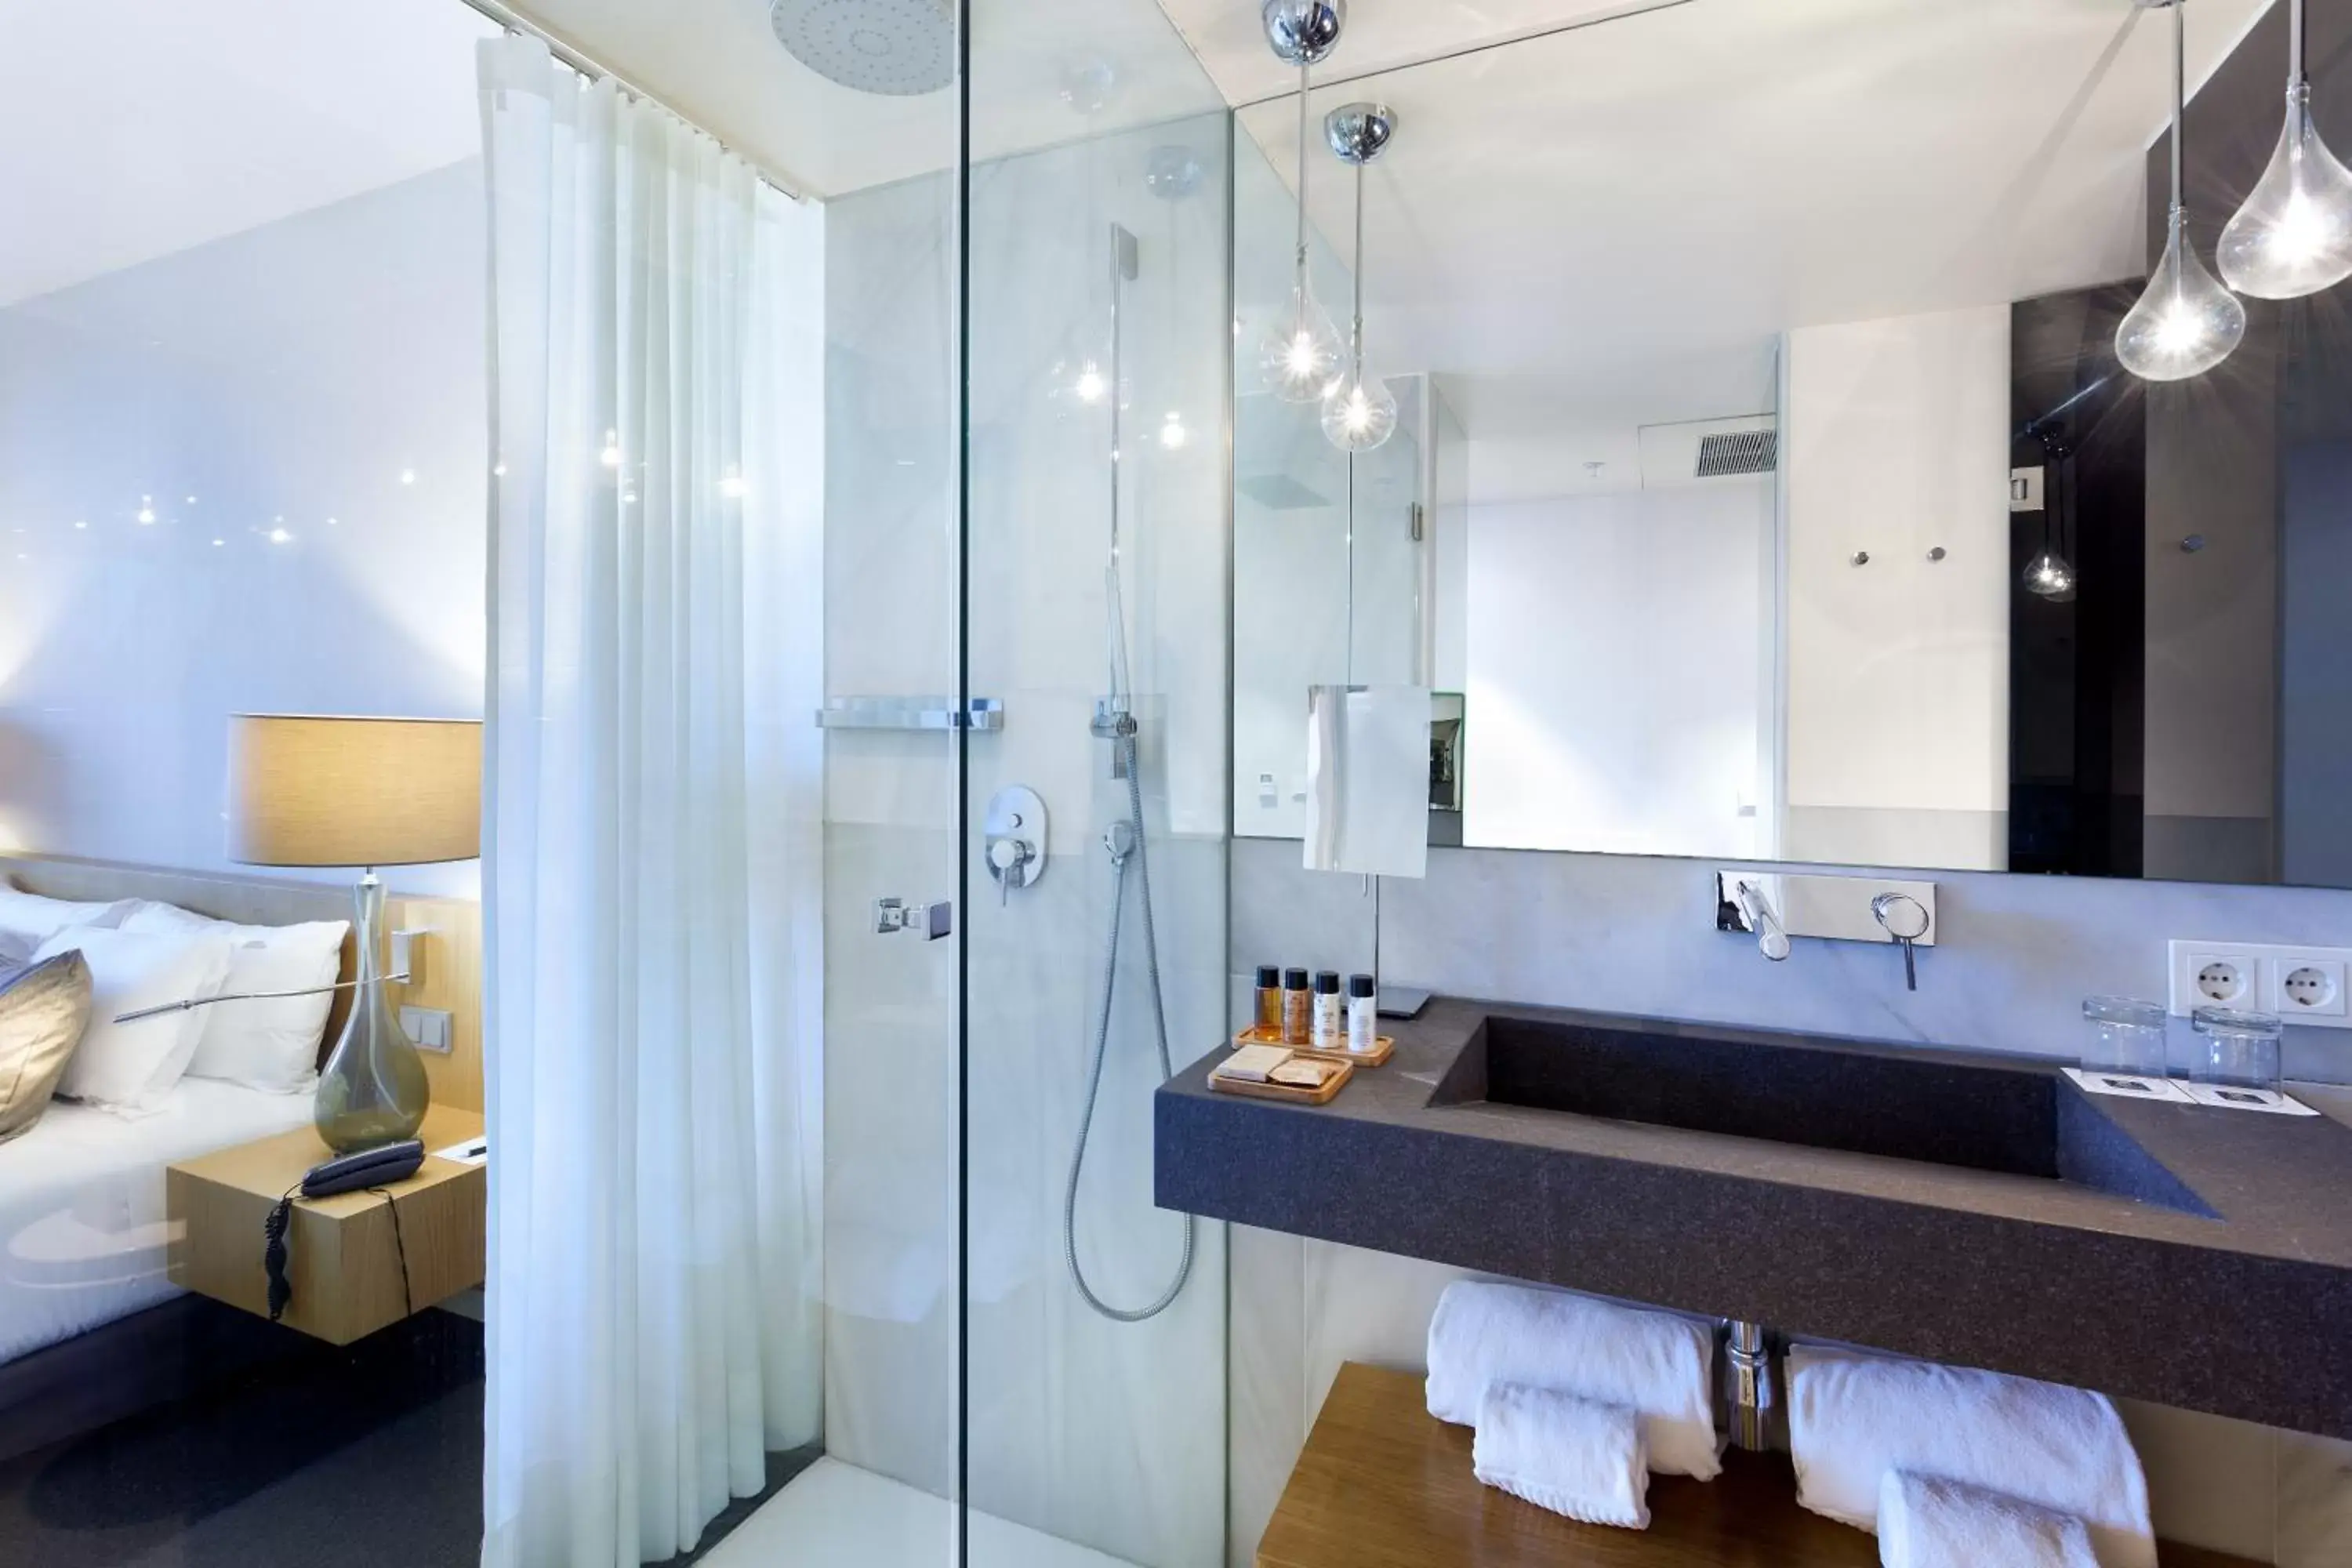 Photo of the whole room, Bathroom in Hotel Royal Passeig de Gracia